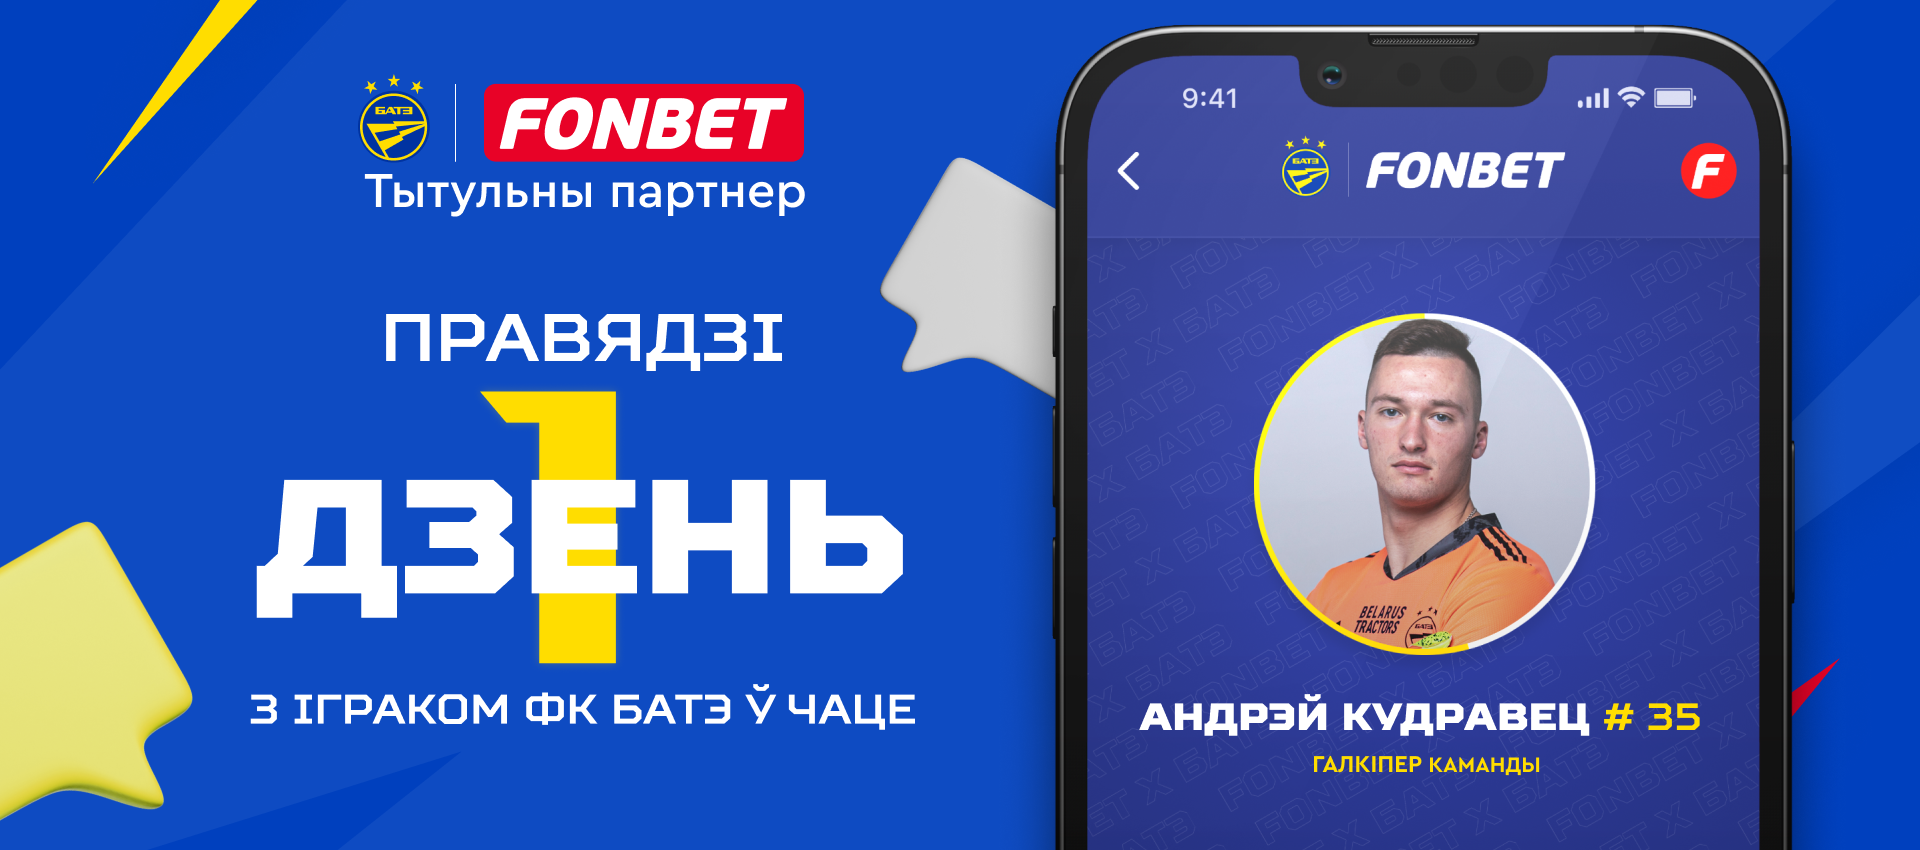 Проведите один день в чате с вратарем БАТЭ! Fonbet и самый титулованный клуб Беларуси анонсируют совместную акцию